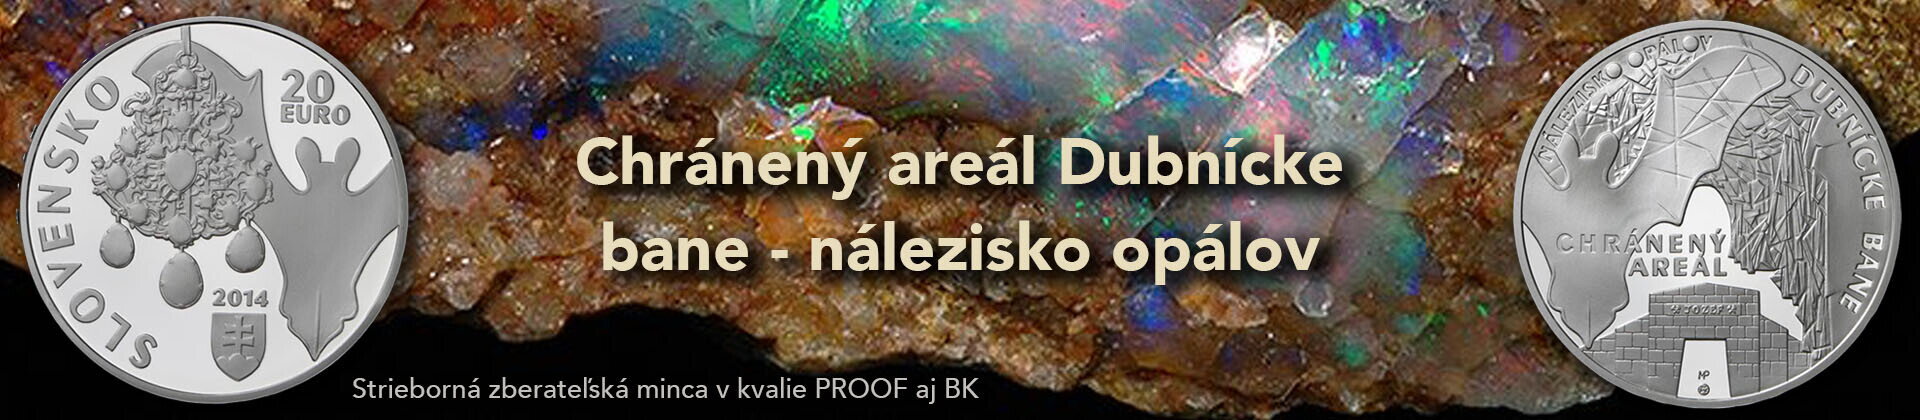   20 Euro/2014 - Chránený areál Dubnícke bane – nálezisko opálov